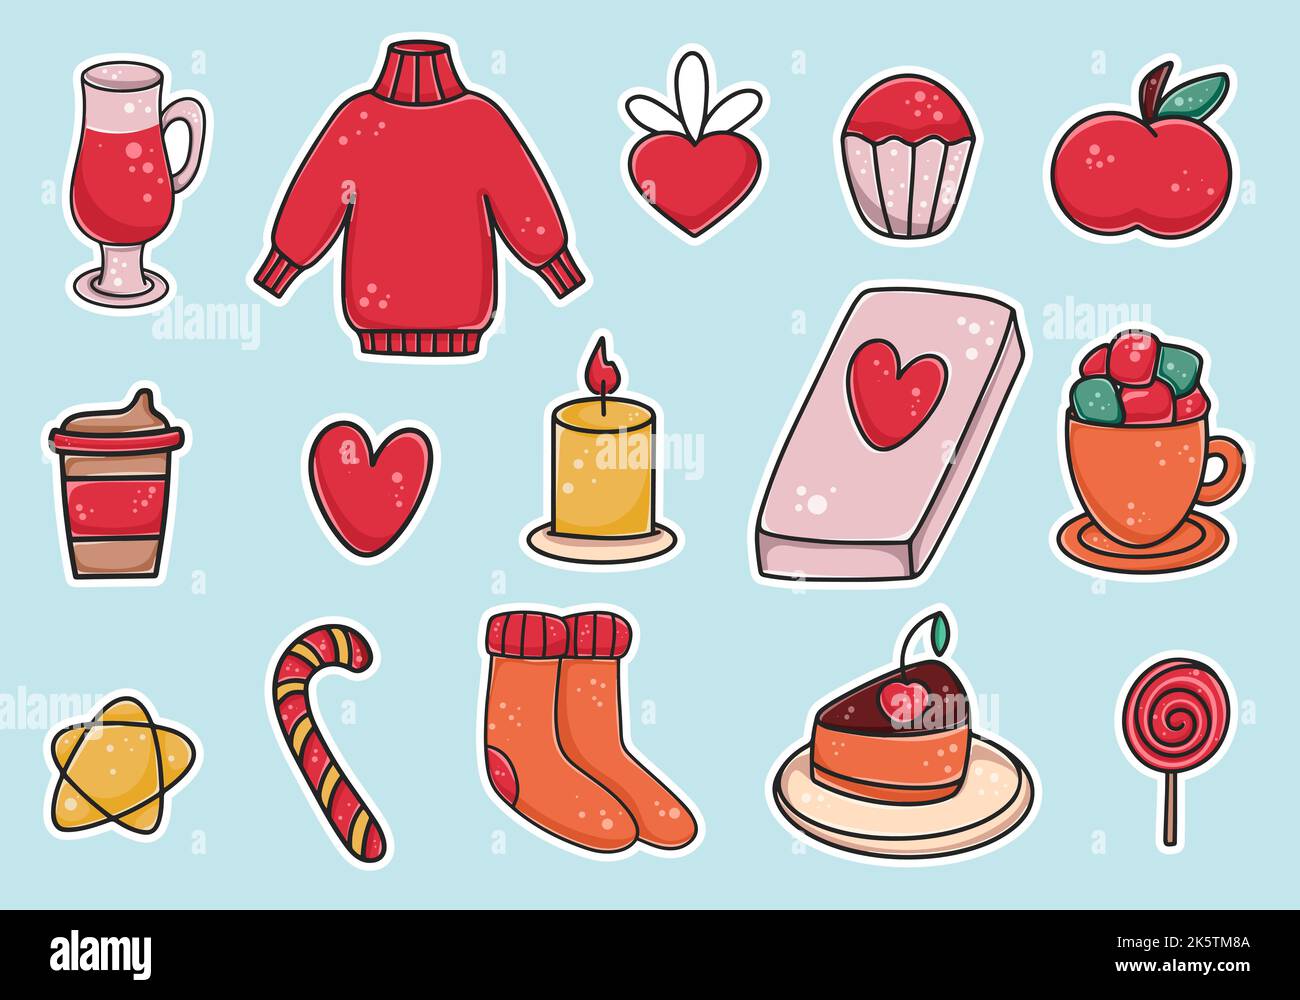 Handgezeichnetes Set von winterlichen gemütlichen Stickern. Kollektion mit Lebensmitteln und Gegenständen für Winterurlaub und Freizeit. Niedliche Ikonen Kuchen, Kaffee, gestrickte Dinge Stock Vektor